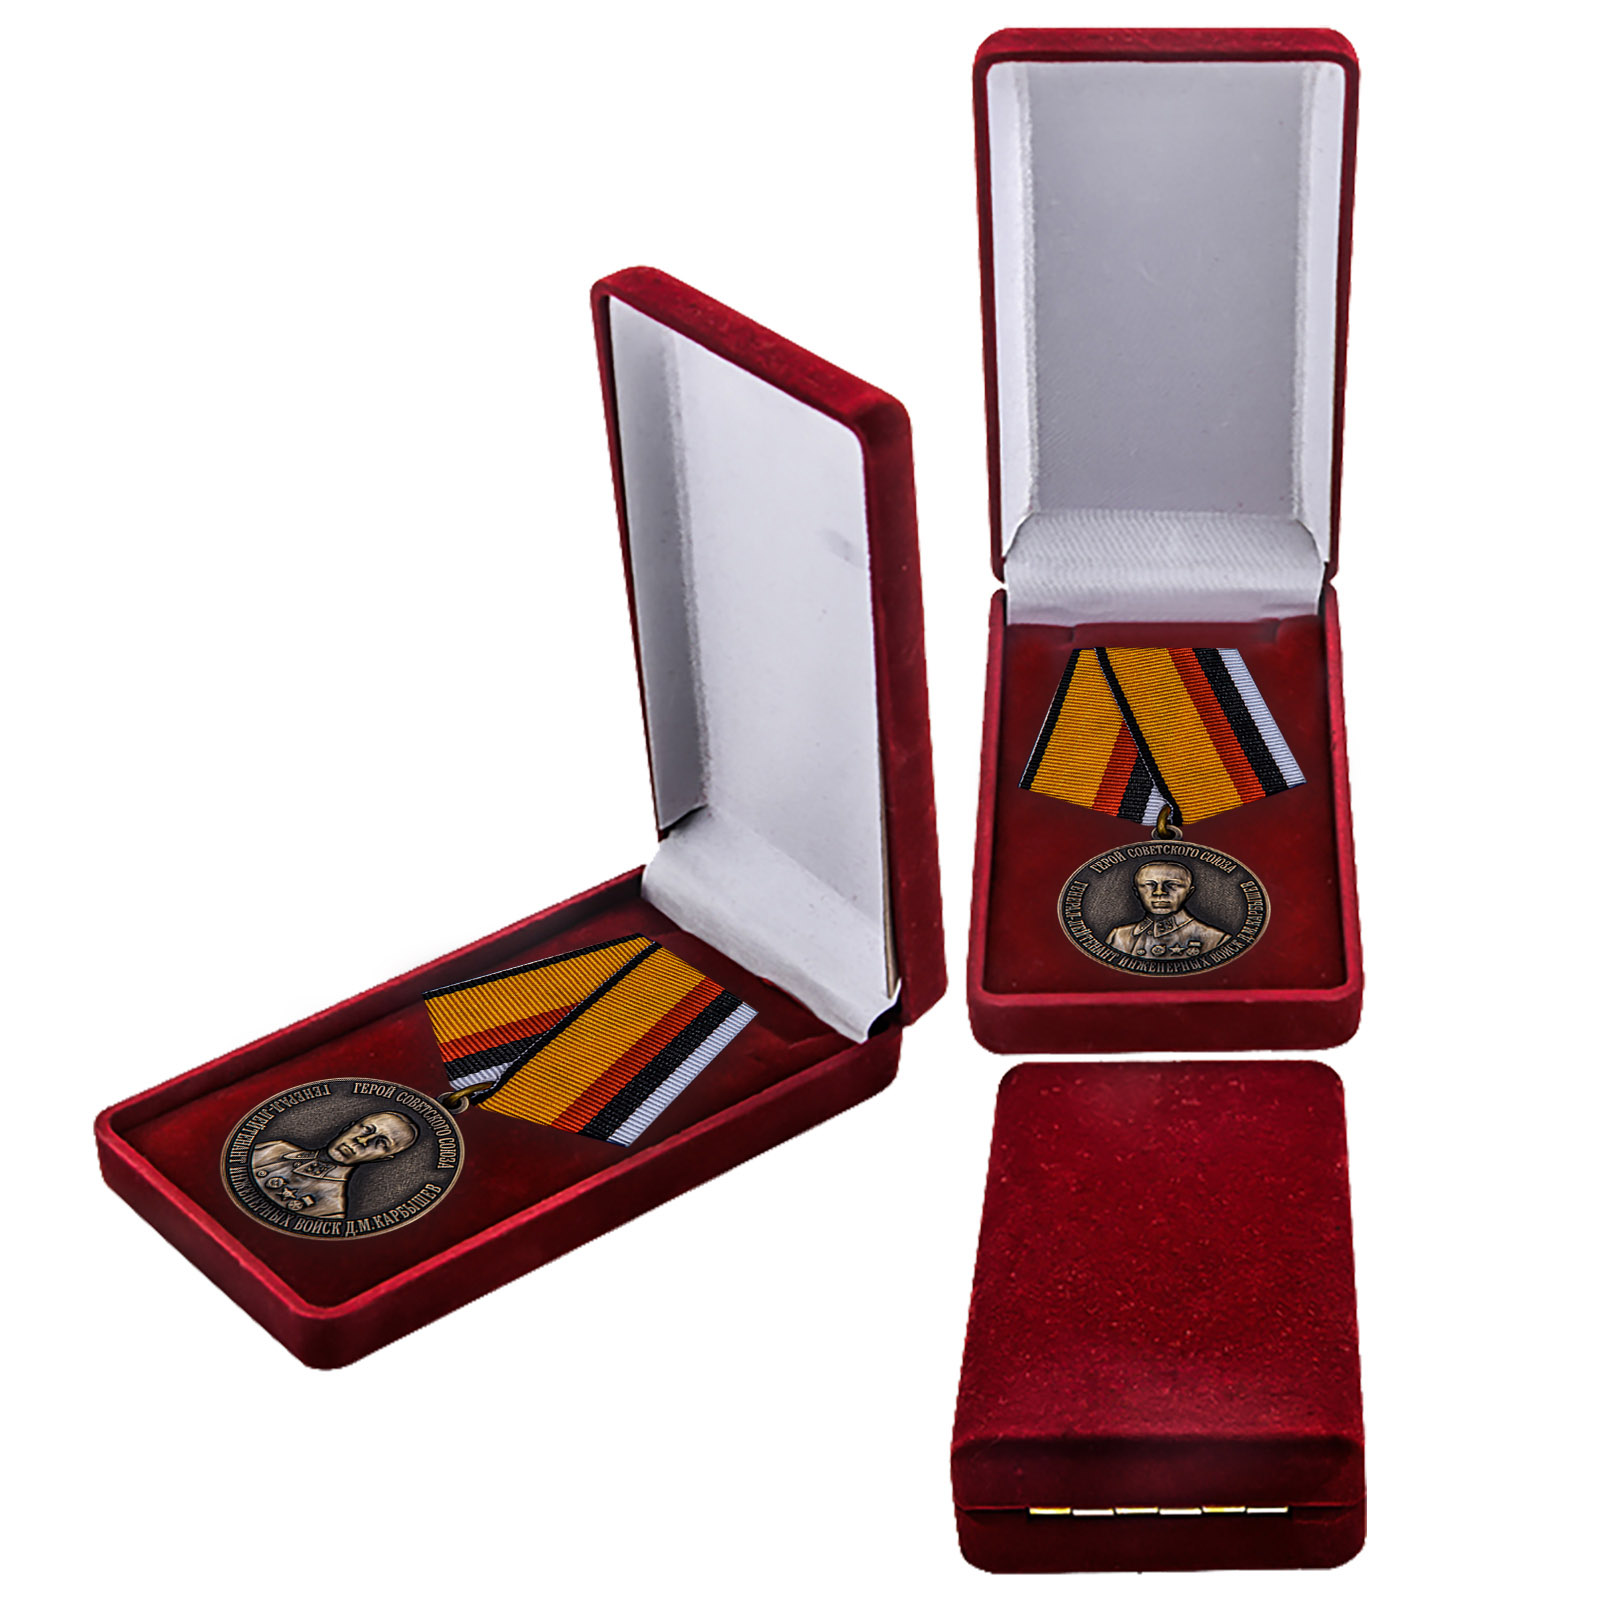 Купить медаль Герой Советского Союза Карбышев Д.М. выгодно в подарок